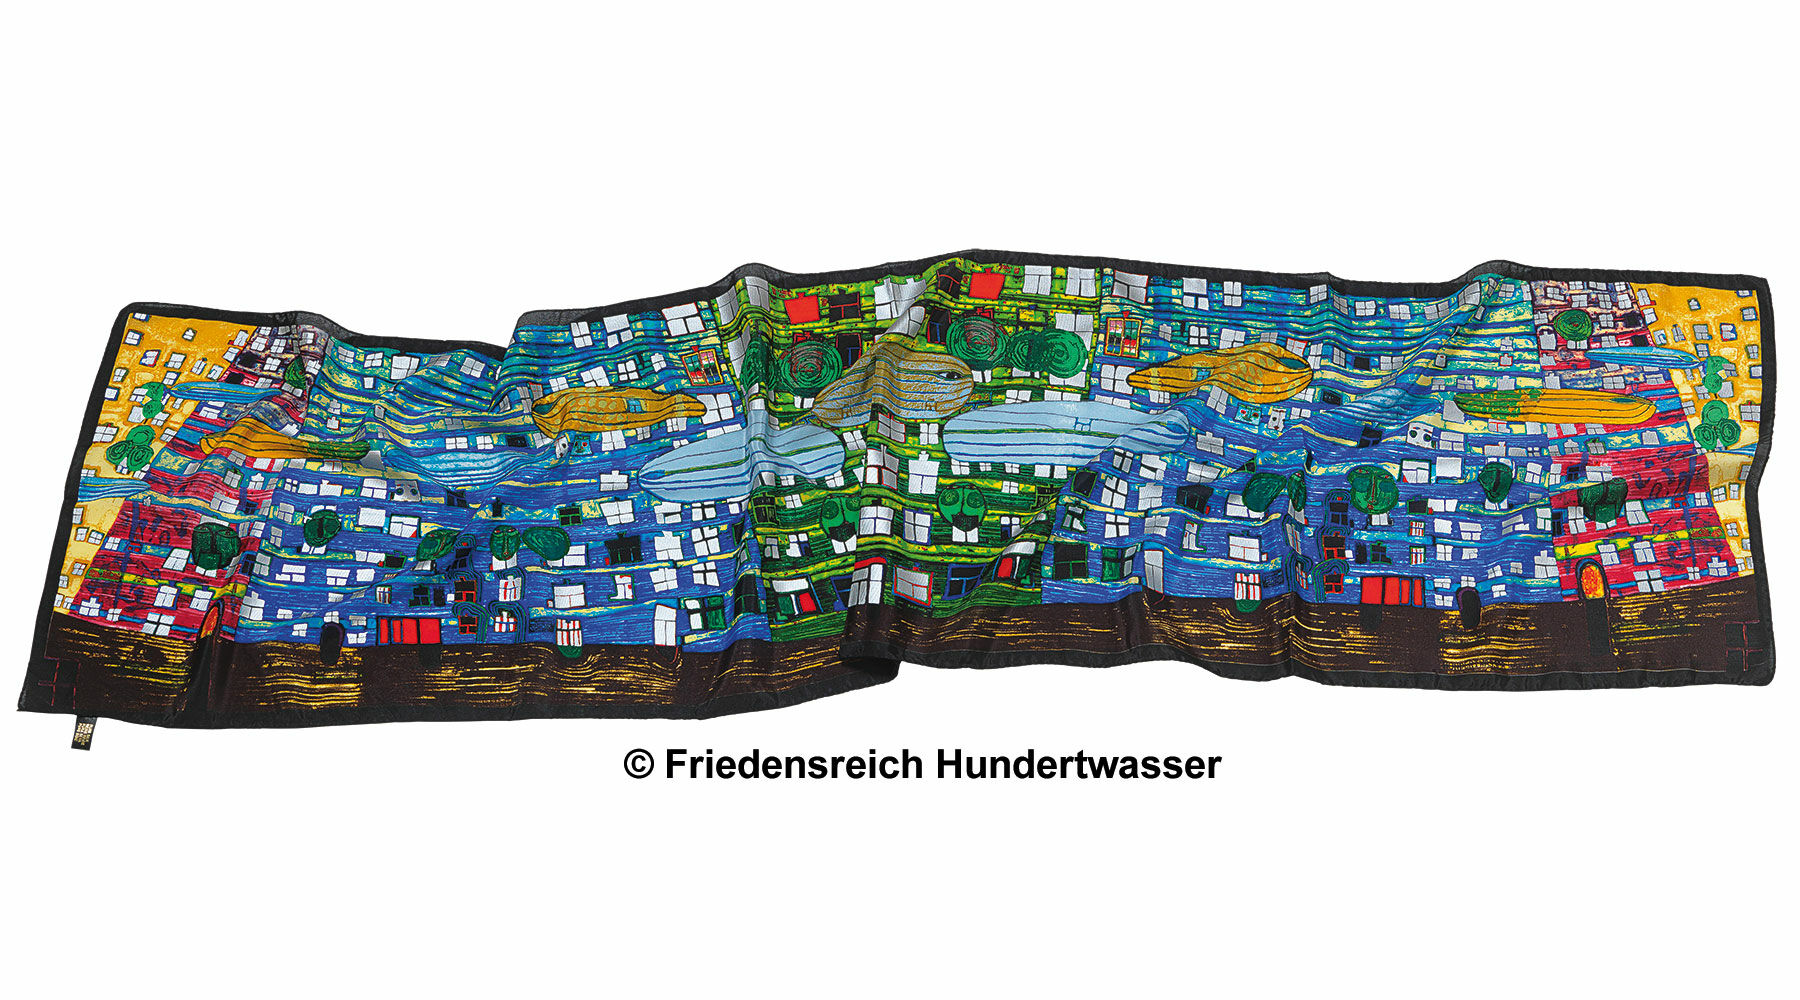 (777) Tørklæde "Hvalernes sang" von Friedensreich Hundertwasser